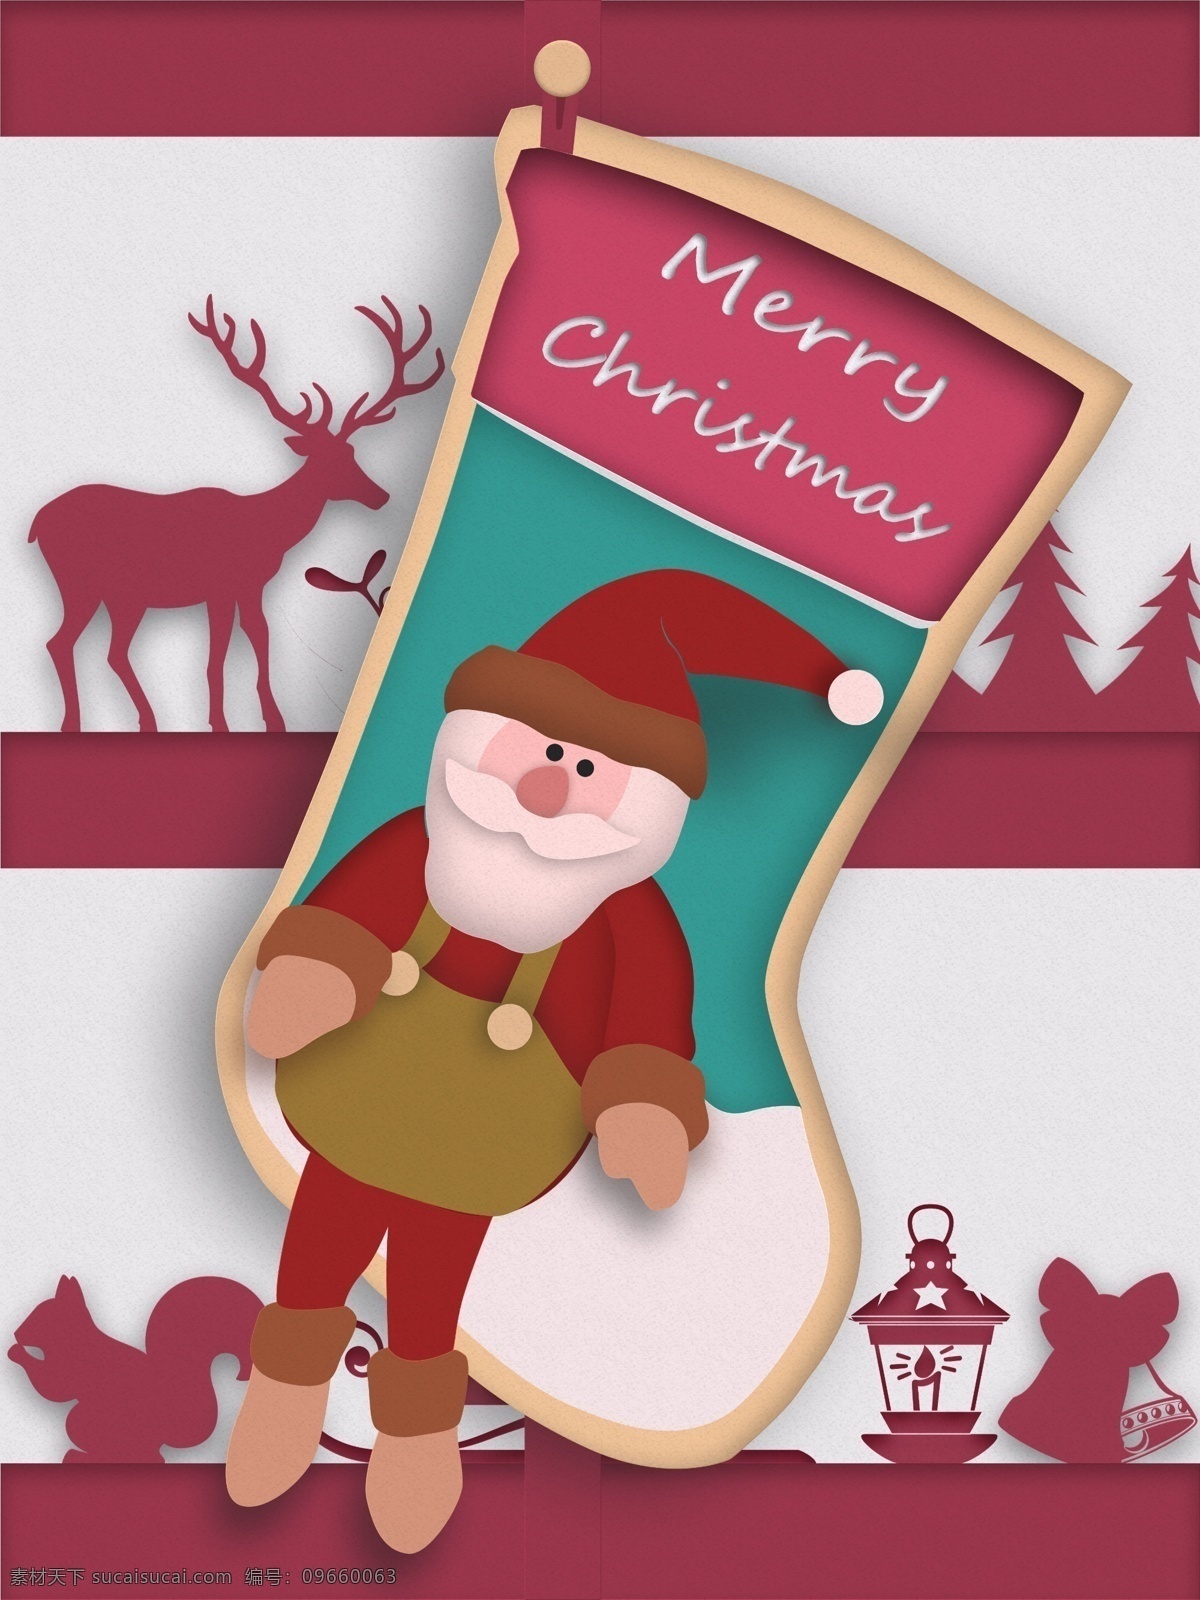 圣诞节 悬挂 圣诞 袜 剪纸 风 插画 圣诞老人 松鼠 红色 圣诞袜 鹿 剪纸风